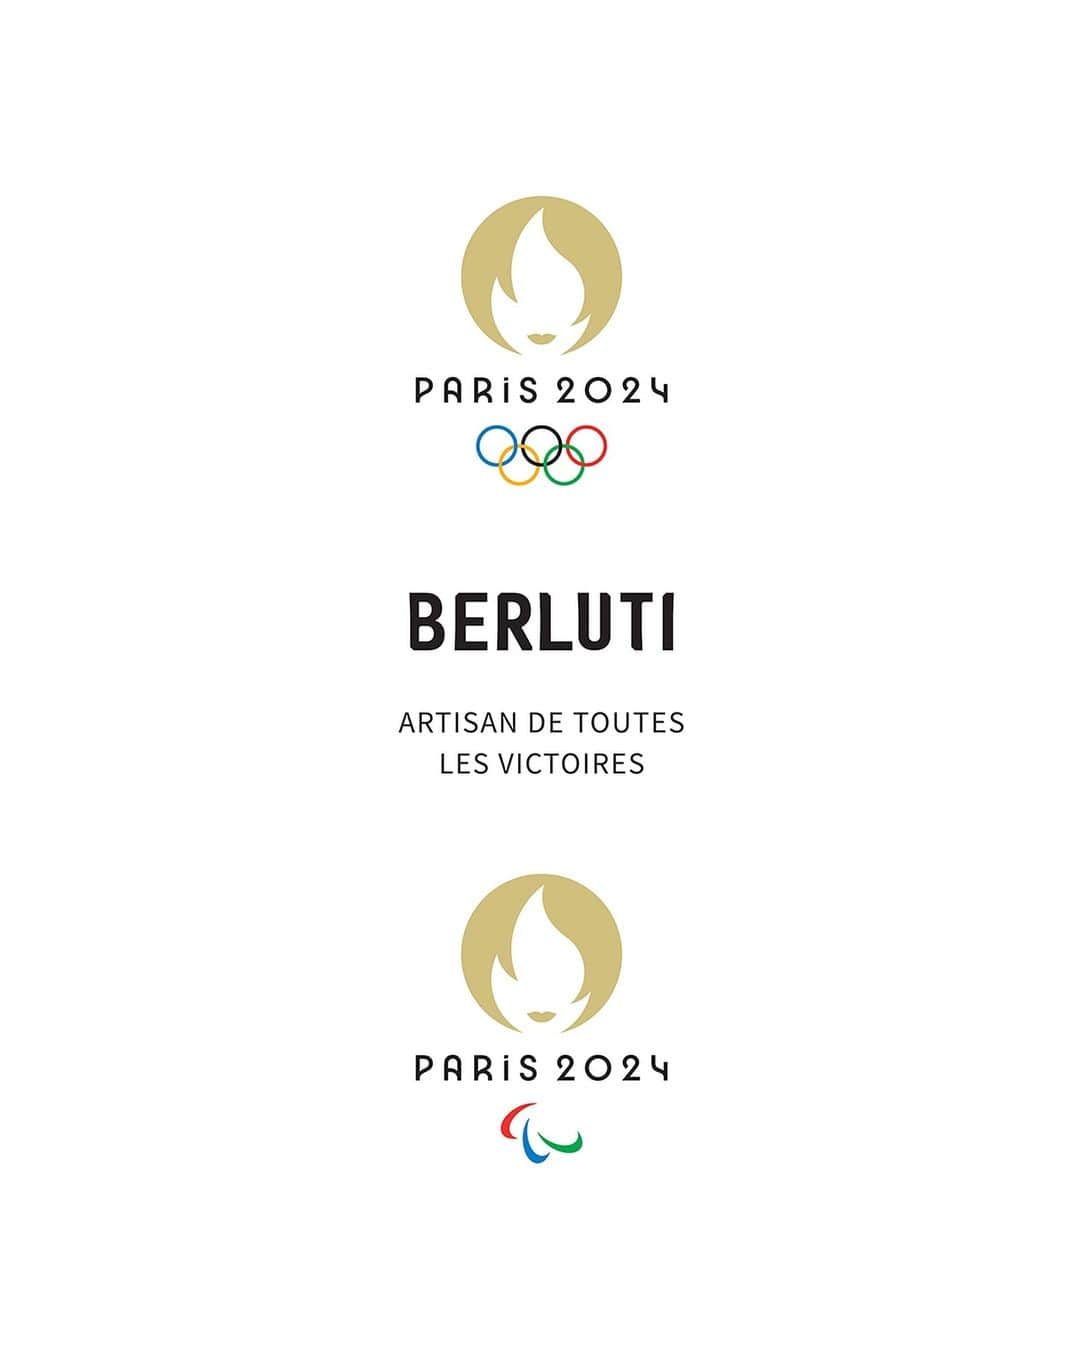 ベルルッティのインスタグラム：「#BERLUTI HABILLERA L’ÉQUIPE DE FRANCE POUR LES CÉRÉMONIES D’OUVERTURE DES JEUX OLYMPIQUES ET PARALYMPIQUES DE PARIS 2024   Dans le cadre du partenariat entre @lvmh et @paris2024 révélé le 24 juillet, Berluti, Maison française confirme son engagement pour l’événement et annonce qu’elle habillera, des pieds à la tête, l’@equipefra lors des cérémonies d’ouverture des Jeux Olympiques et Paralympiques de Paris 2024.     Les artisans et équipes Berluti travaillent avec celles de @marieamelielefur, Présidente du Comité Paralympique et Sportif Français, de @davidlappartient, Président du Comité National Olympique et Sportif Français, ainsi que celles de @tony_estanguet, Président de Paris 2024.    Sous l’impulsion et l’expertise créative de Berluti, la Maison s’attache à proposer une silhouette contemporaine symbole de l’élégance française, dans le respect de ses codes d’exigence et de confection tout en étant à l’écoute des besoins de toutes celles et tous ceux qui porteront cette tenue pour ces deux journées mémorables.    Rendez-vous prochainement pour plus de détails.     BERLUTI TO DESIGN TEAM FRANCE’S UNIFORM FOR THE OPENING CEREMONIES OF OLYMPIC AND PARALYMPIC GAMES PARIS 2024   Berluti, the French house is delighted to confirm its role in Paris 2024 as part of LVMH’s partnership with the landmark event, the Maison is to dress the French team from head to toe for the Opening Ceremonies of the Olympic and Paralympic Games Paris 2024.   Berluti’s artisans and creative studios will work closely with teams led by Marie-Amélie Le Fur, President of the French Paralympic and Sports Committee, David Lappartient, President of the French Olympic and Sports Committee, and Tony Estanguet, President of Paris 2024.    This collaborative process, powered by Berluti’s creativity and craftsmanship, will ensure a team kit that reflects the modern spirit of French elegance. France’s athletes will wear these uniforms, designed for their ease and comfort and tailored to the Maison’s usual meticulous standards, over two memorable days.    Stay tuned to discover more details.    #BerlutiParis2024 #LVMH #Paris2024 #ArtisanDeToutesLesVictoires」